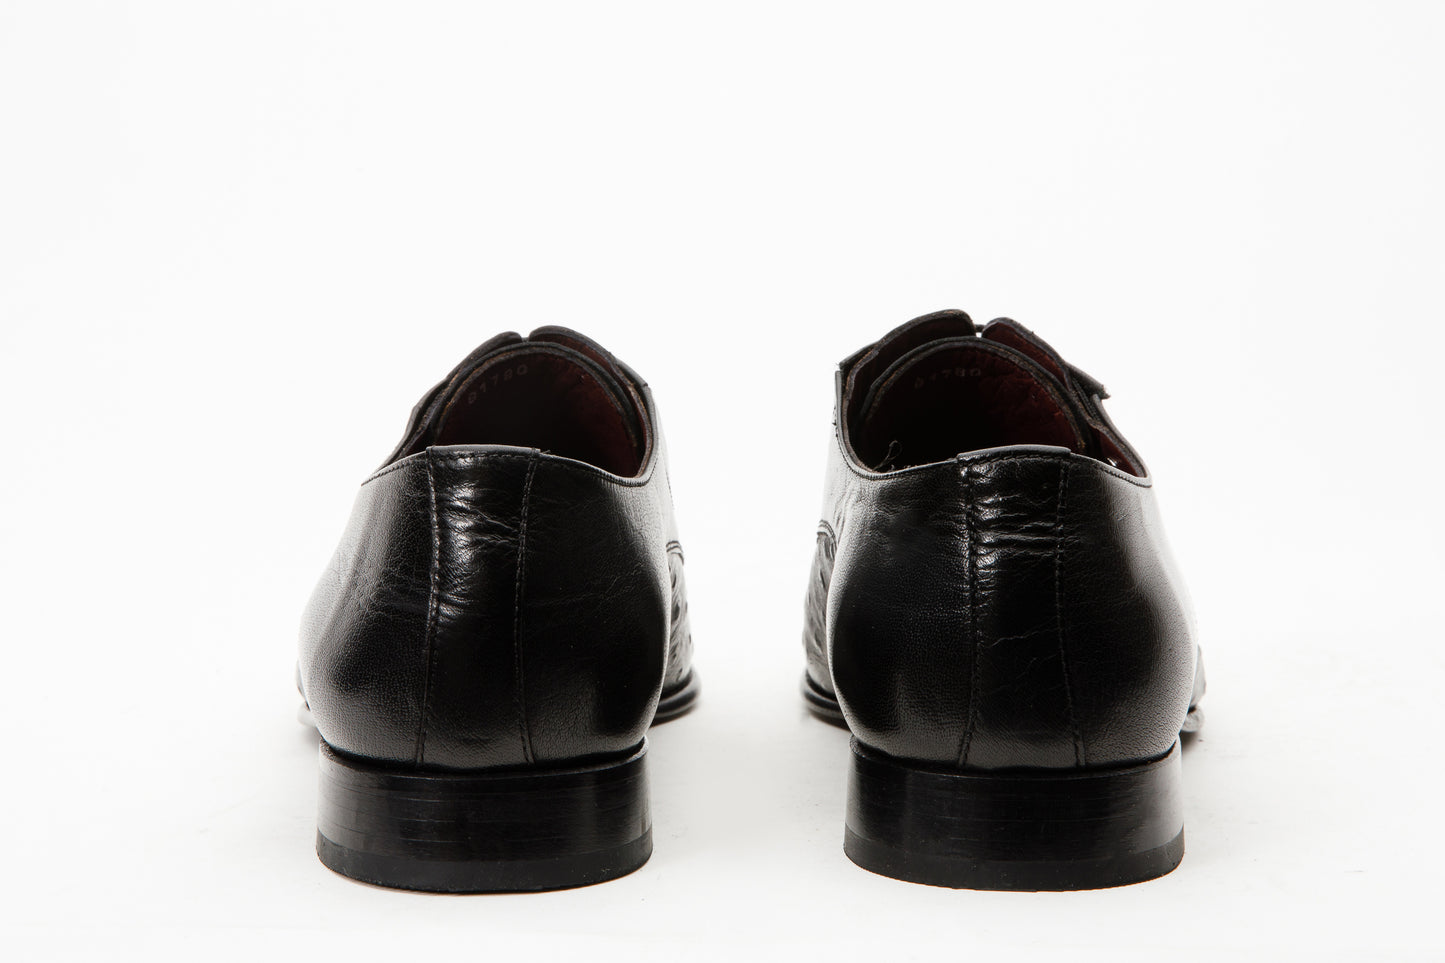 The Porto Alegre Black Leather Derby Men Shoe